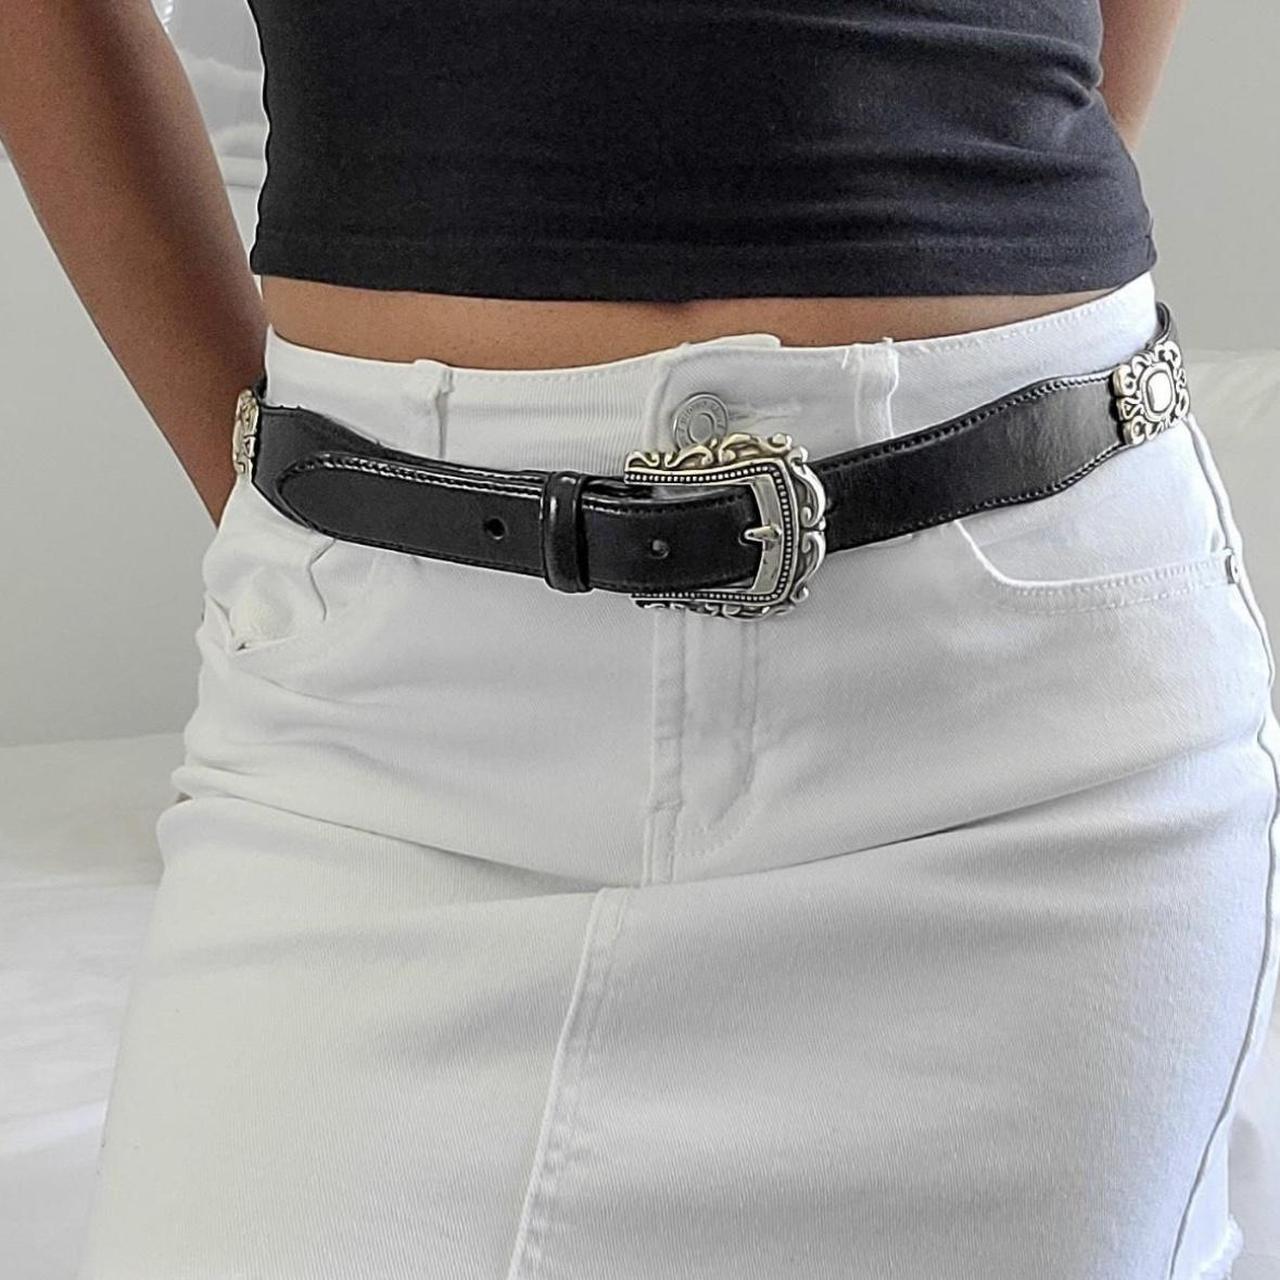 Vintage Boho Belt Black 90s genuine leather belt by... - Depop